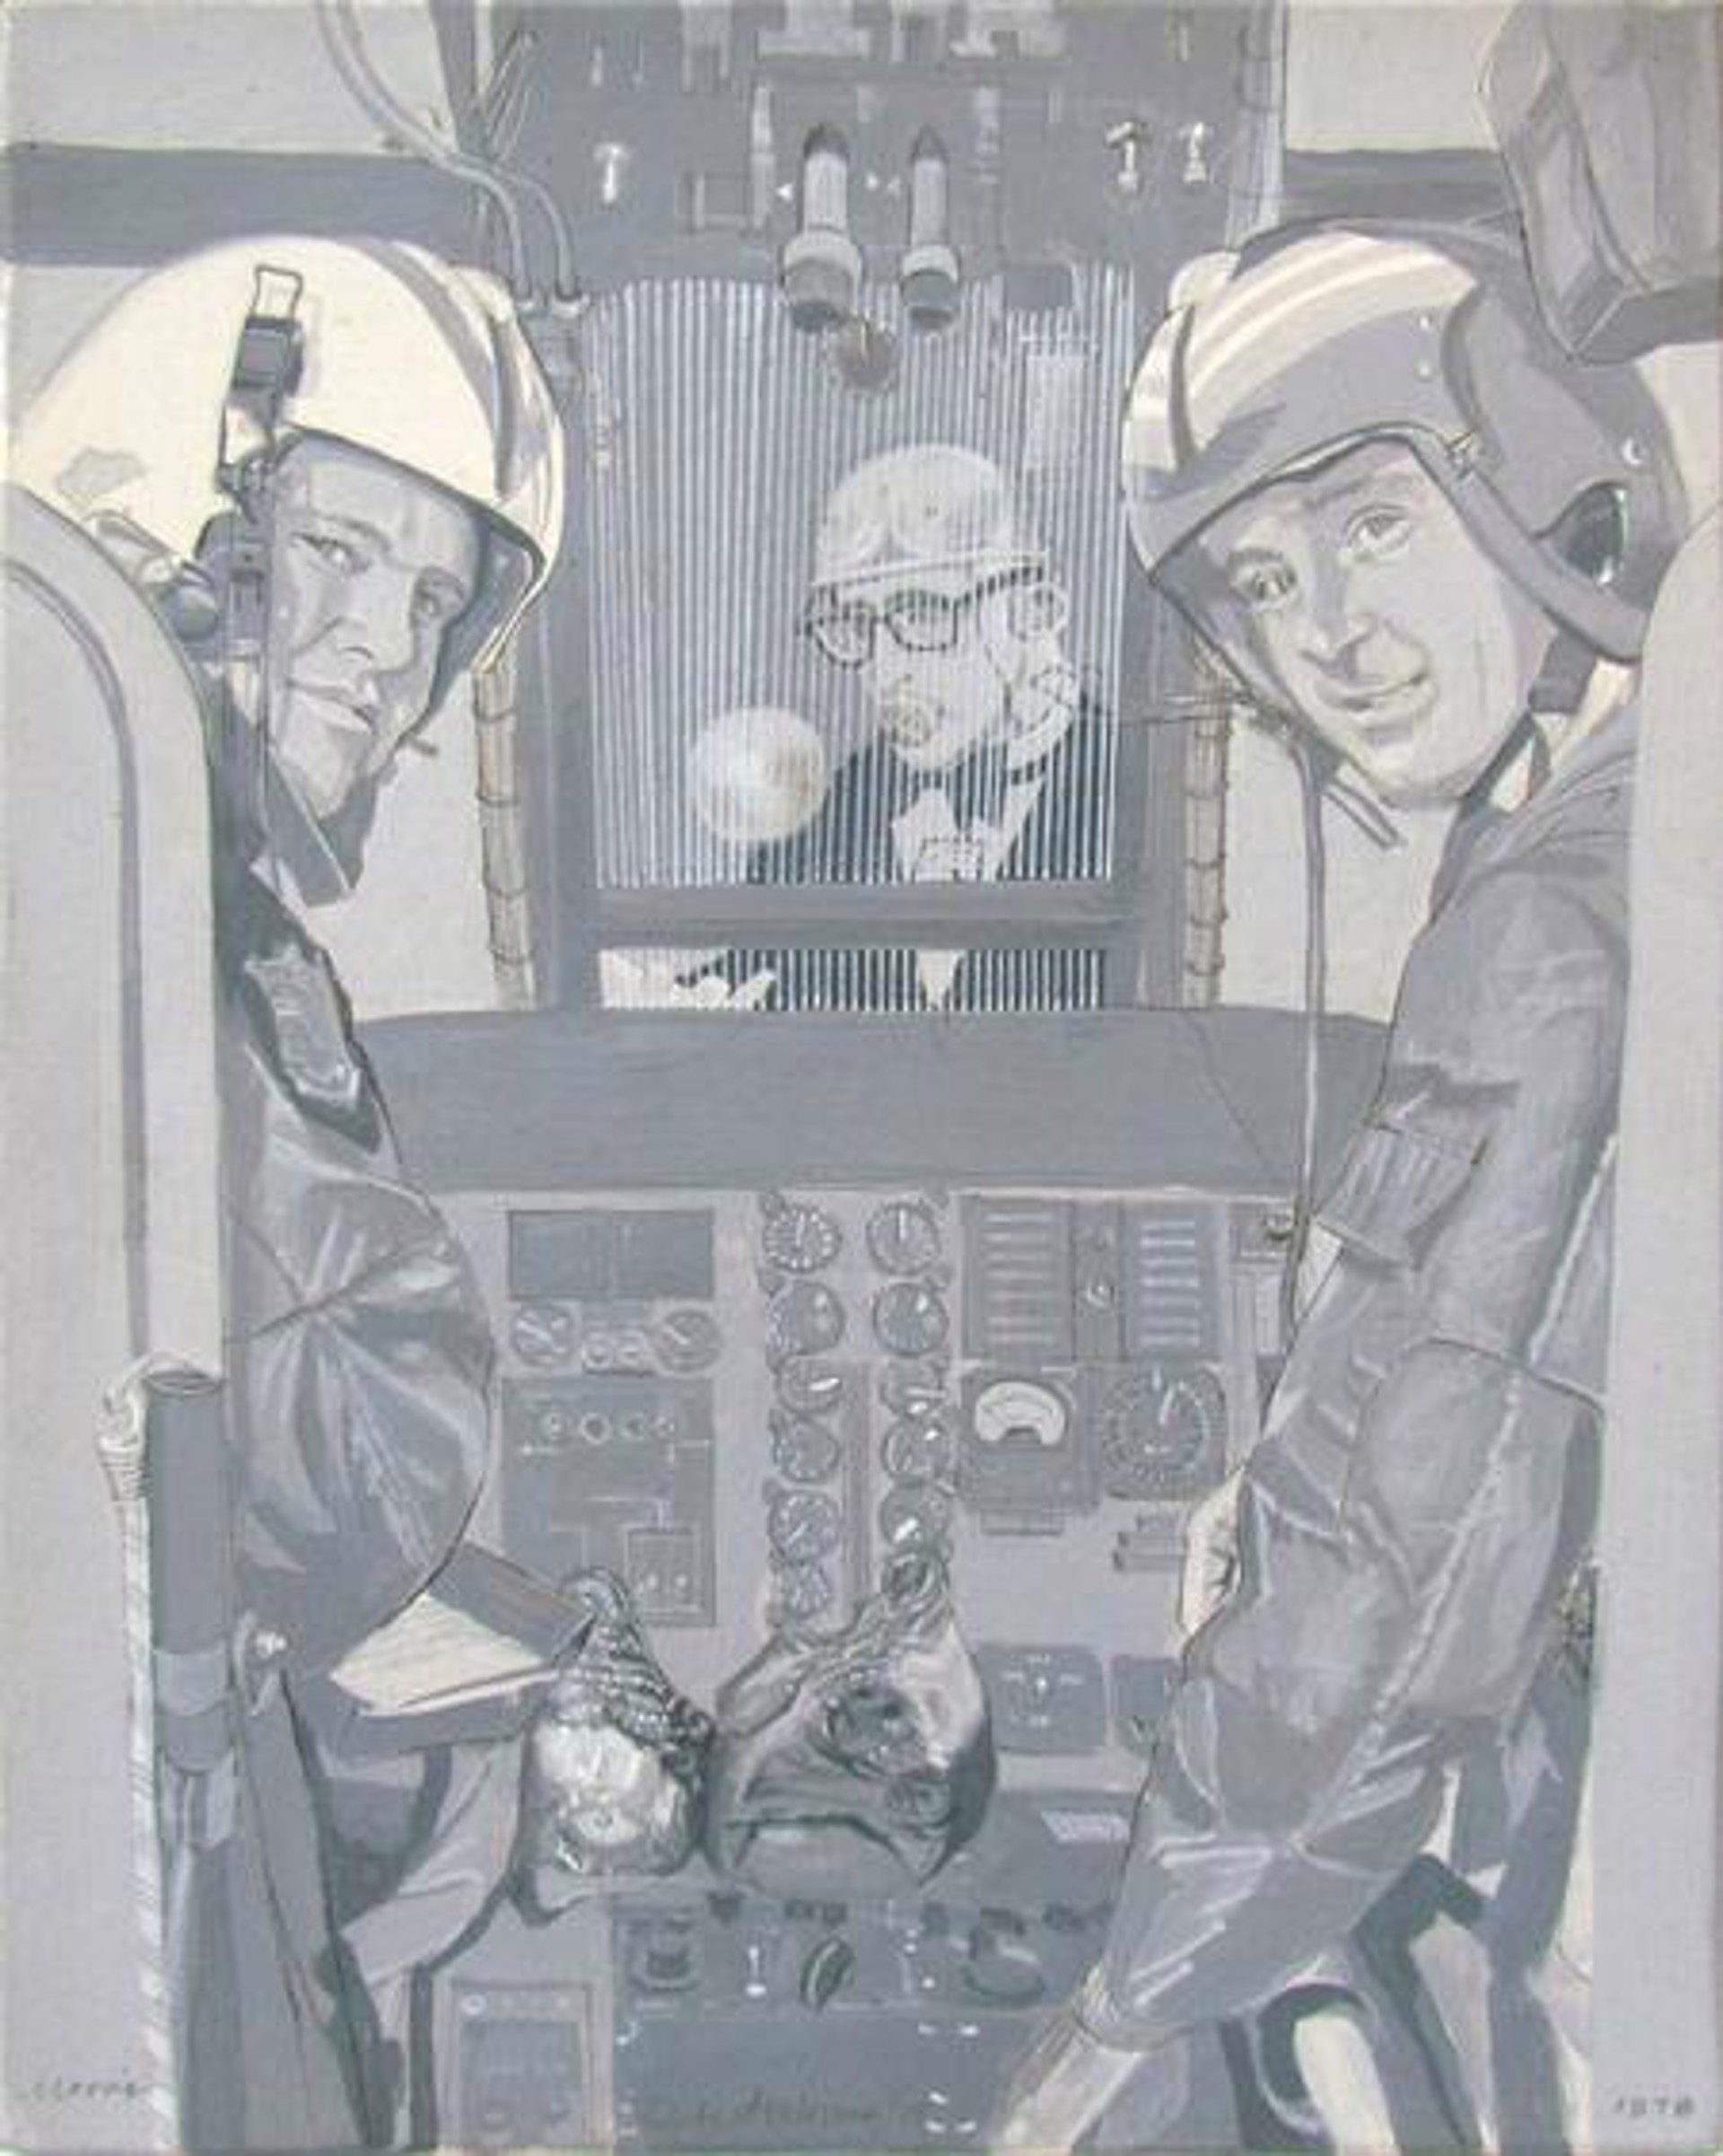 Pilots by Robert Morris